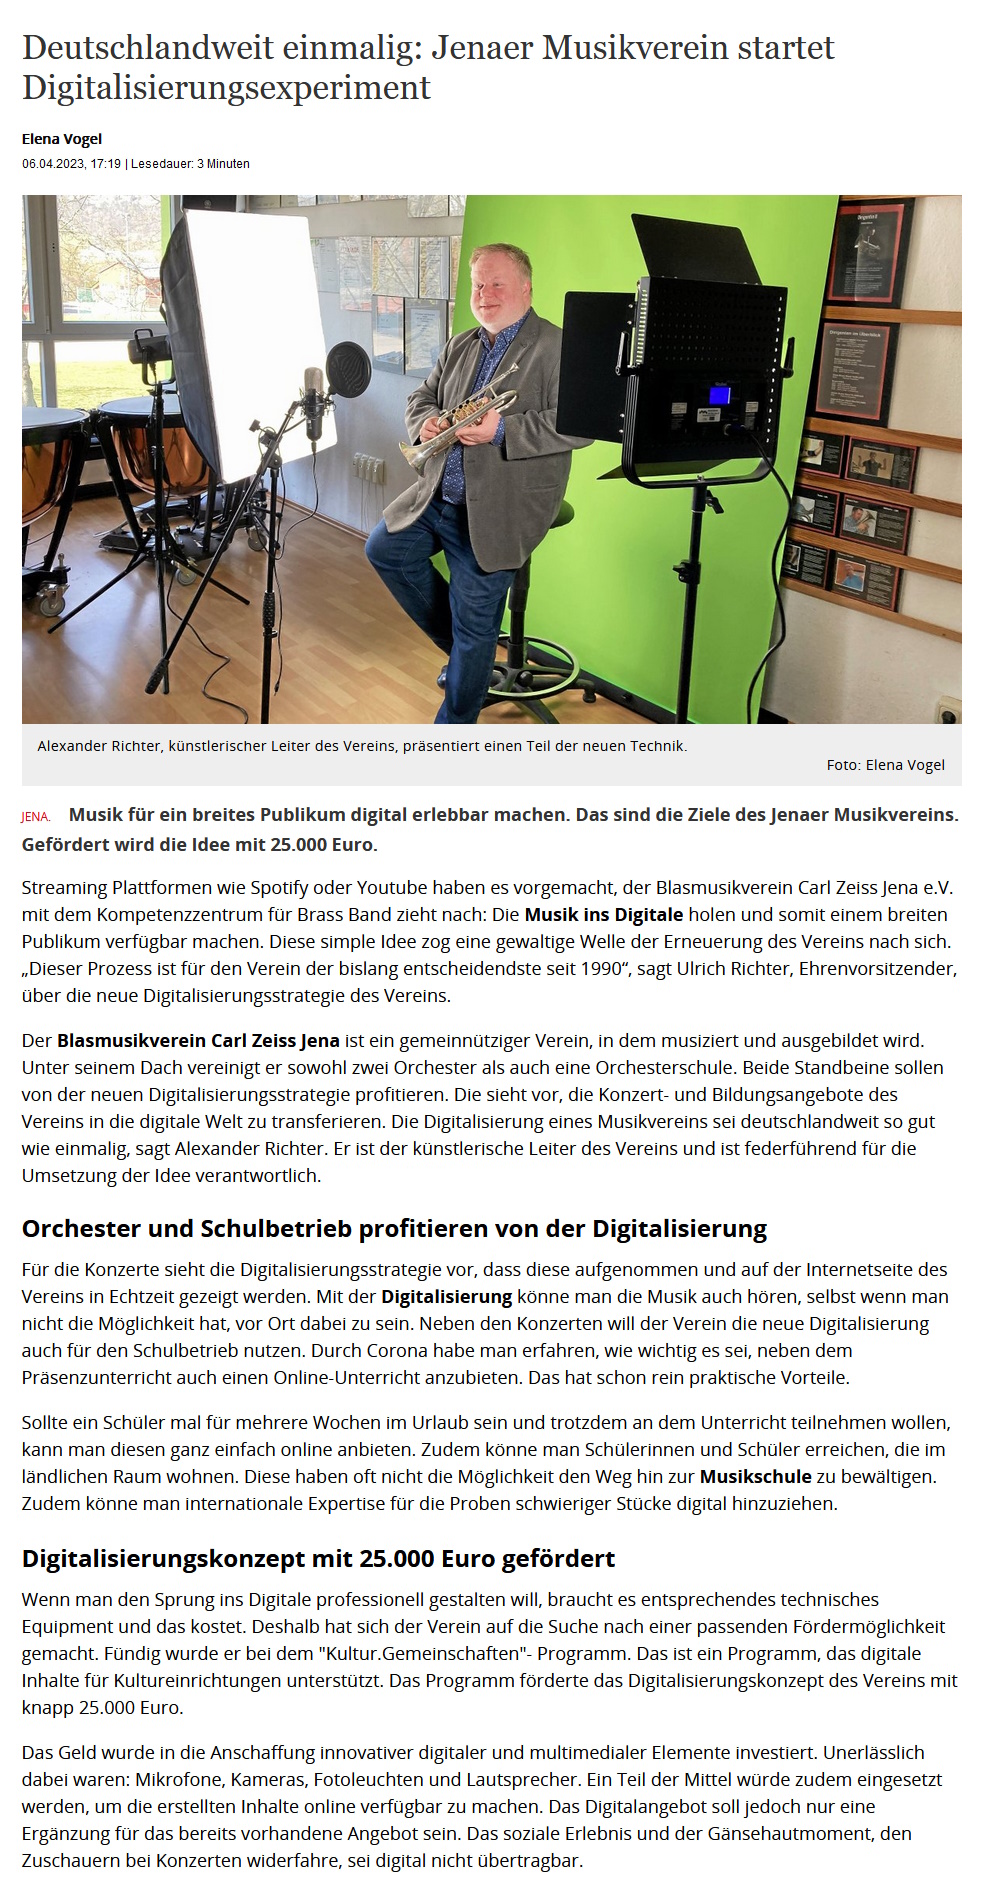 Artikel OTZ Digitalisierung Blasmusikverein Carl Zeiss Jena e.V